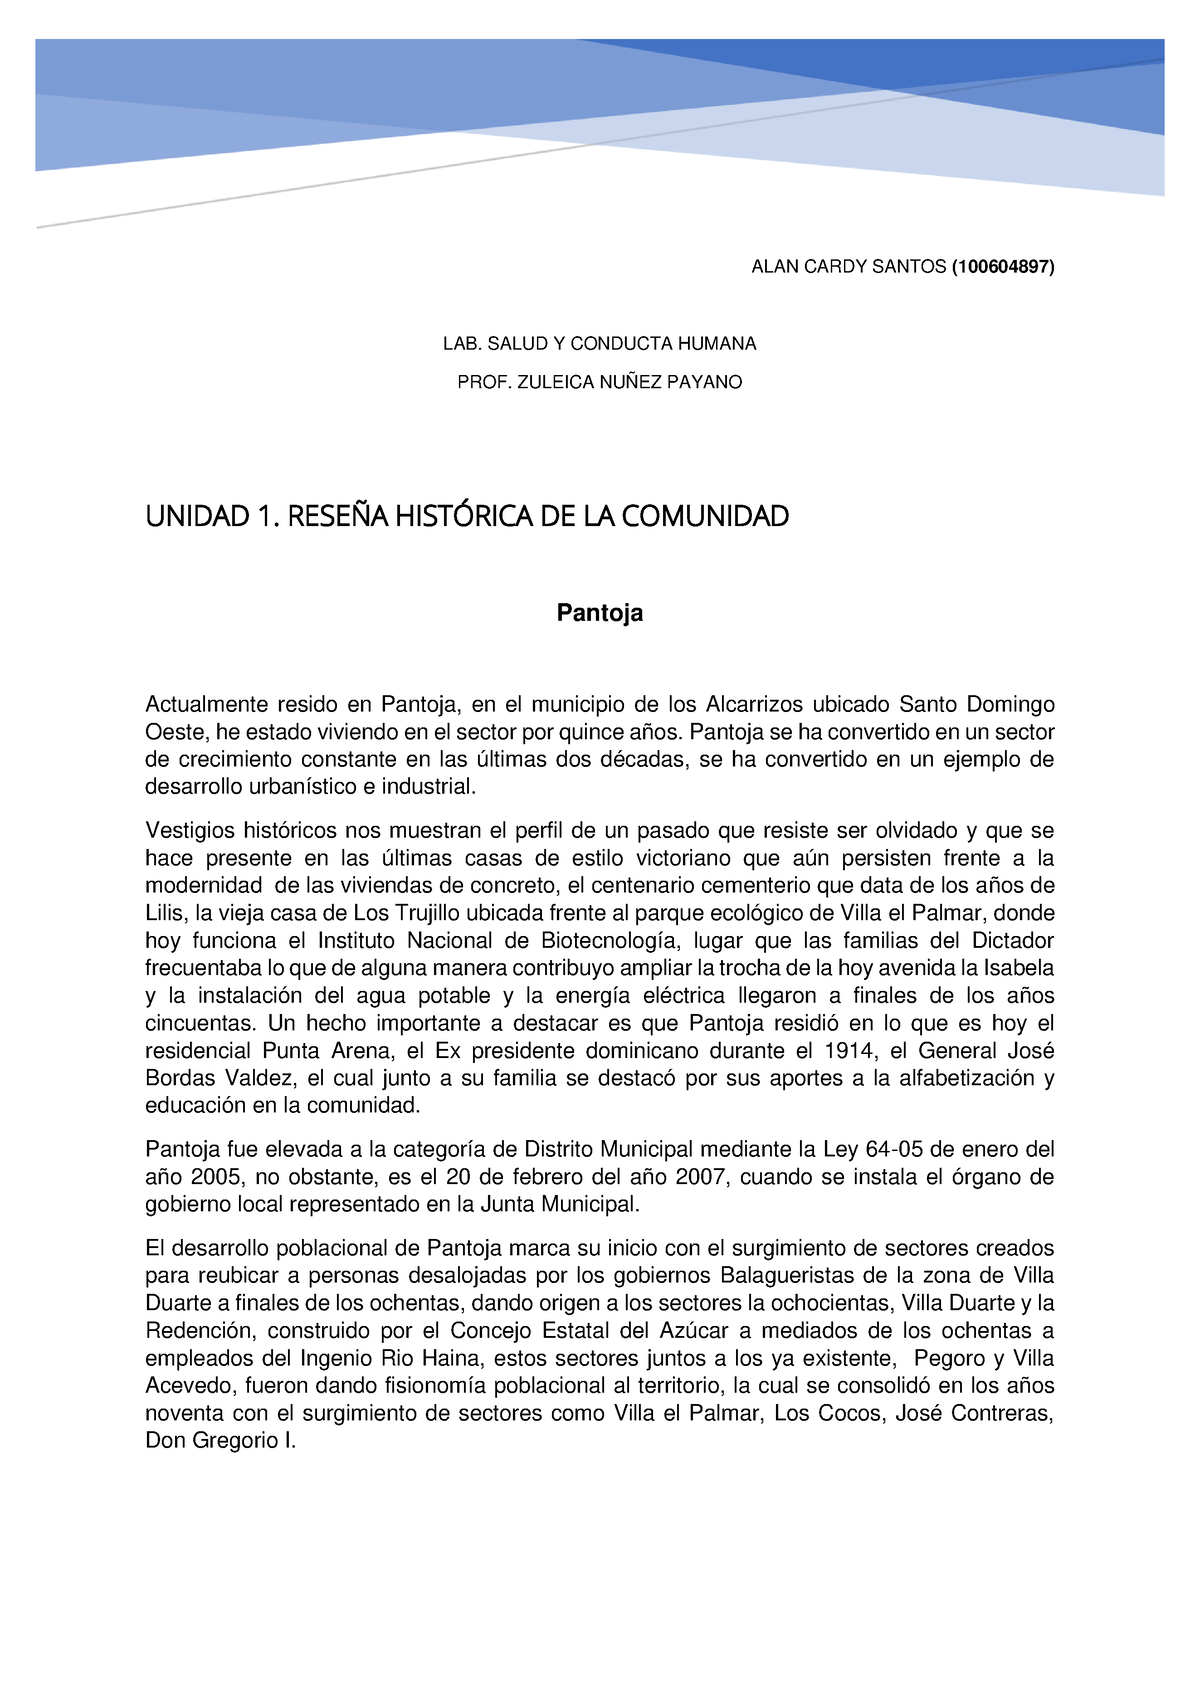 Lab Salud y Conducta humana, unidad 1 - ALAN CARDY SANTOS (100604897 ...